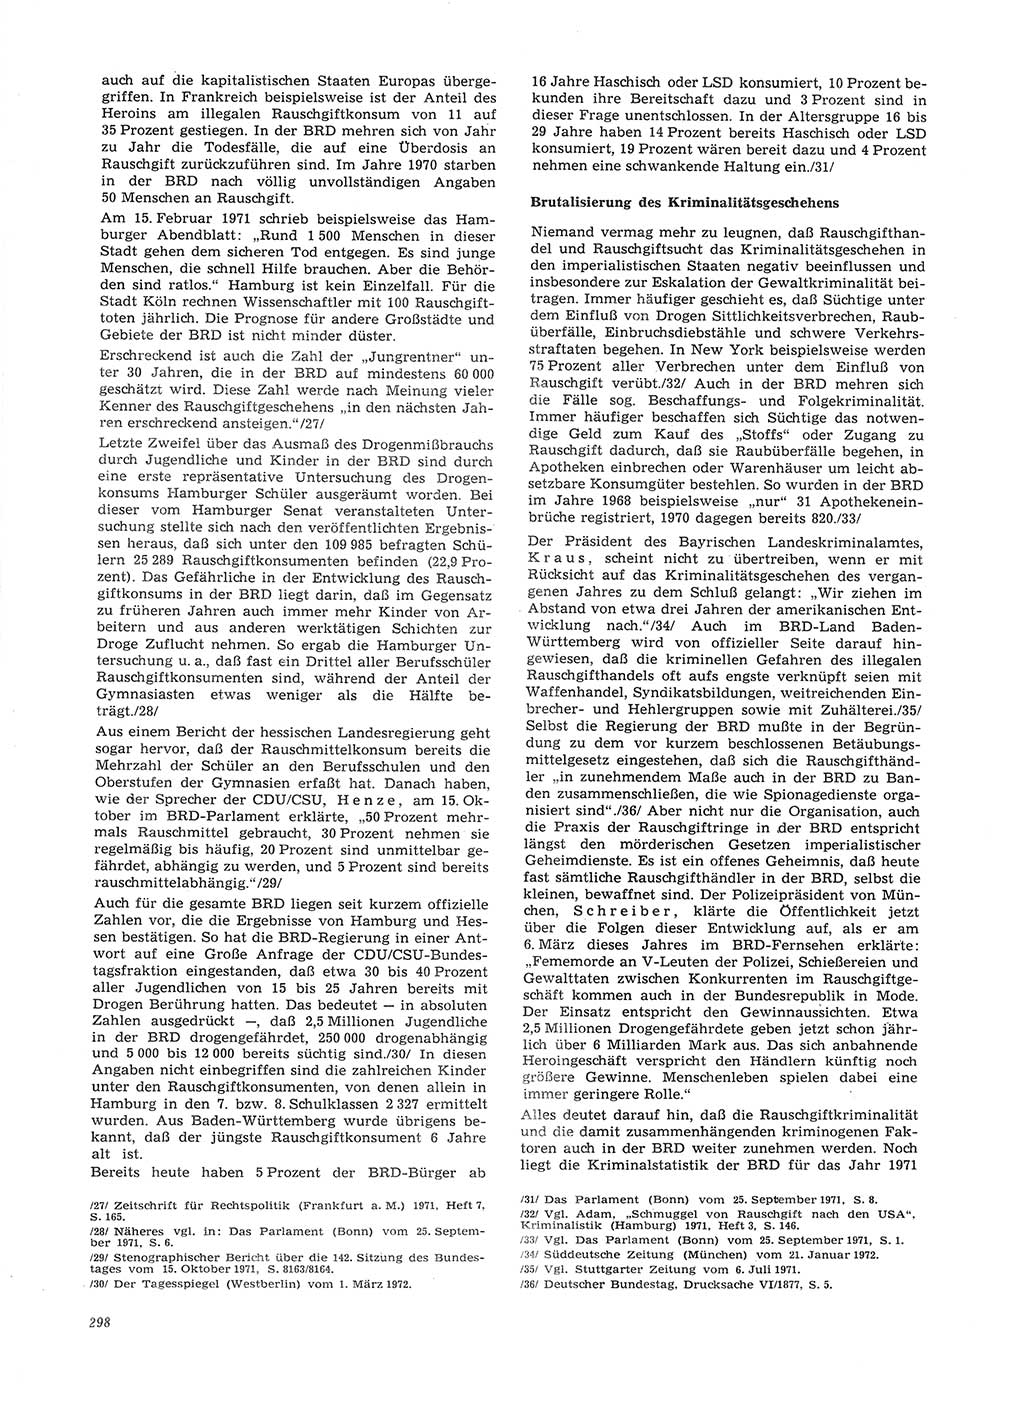 Neue Justiz (NJ), Zeitschrift für Recht und Rechtswissenschaft [Deutsche Demokratische Republik (DDR)], 26. Jahrgang 1972, Seite 298 (NJ DDR 1972, S. 298)